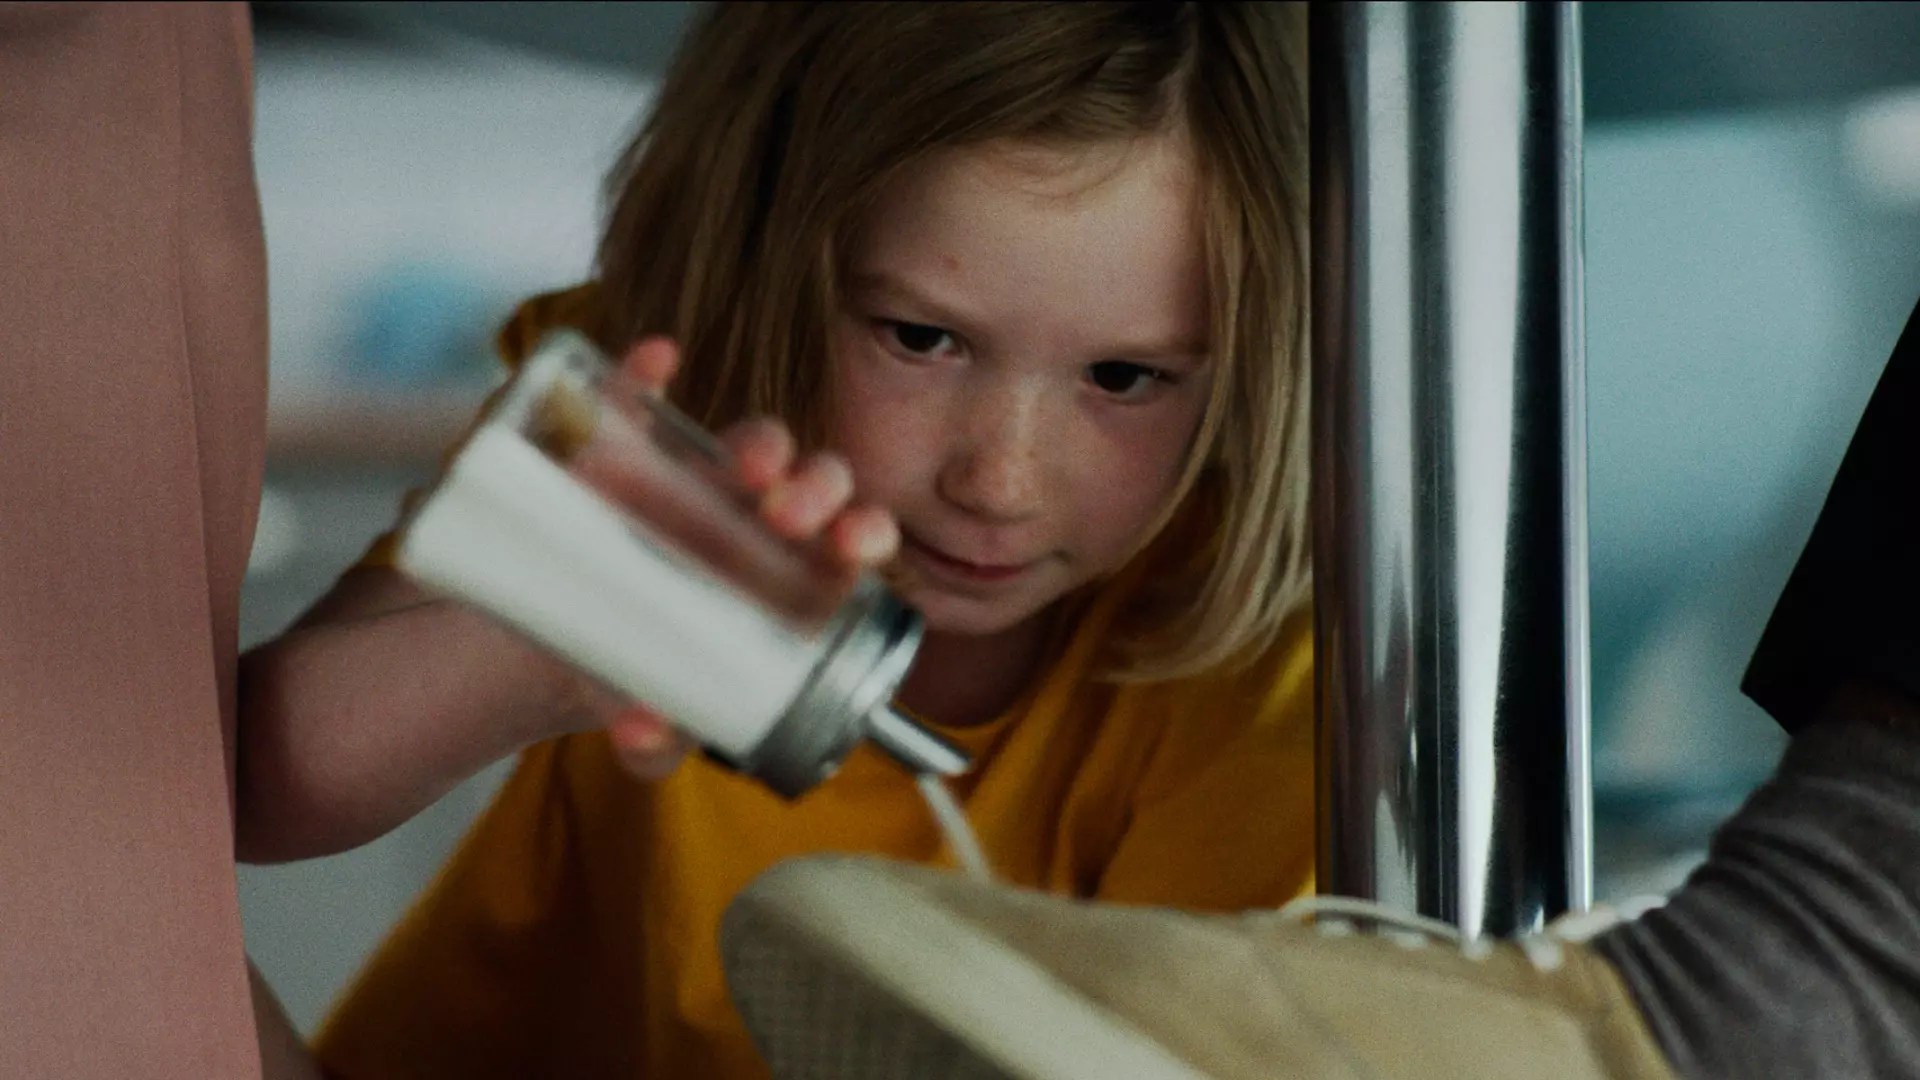 Nærbilde av en ung jente i gul t-skjorte som heller sukker på noen sko under et bord. Det ser ut som hun gjør en rampestrek. 